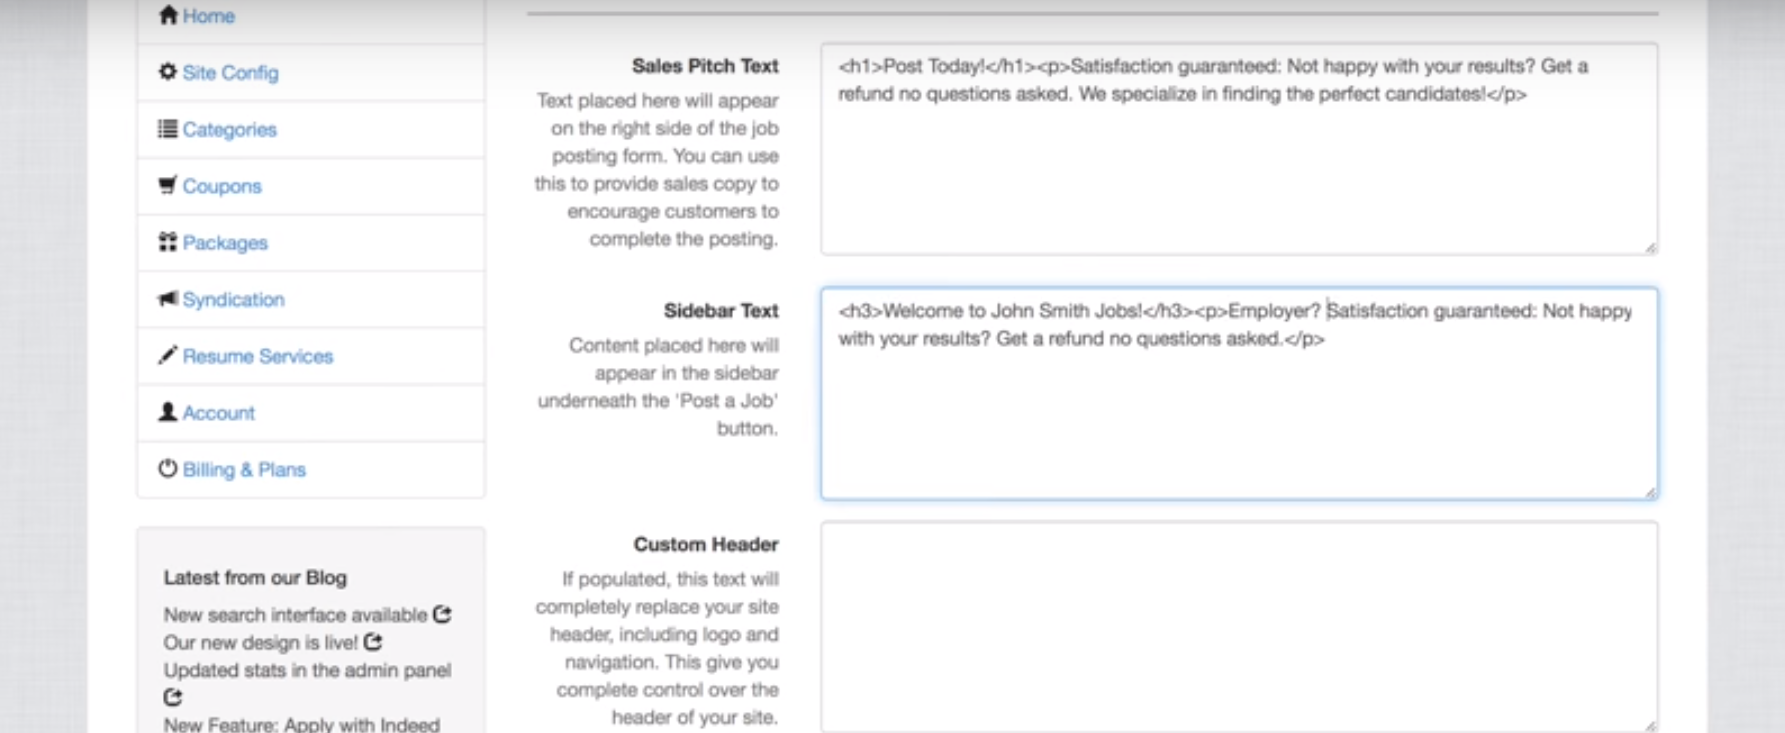 JobBoard.io sales pitch text screenshot